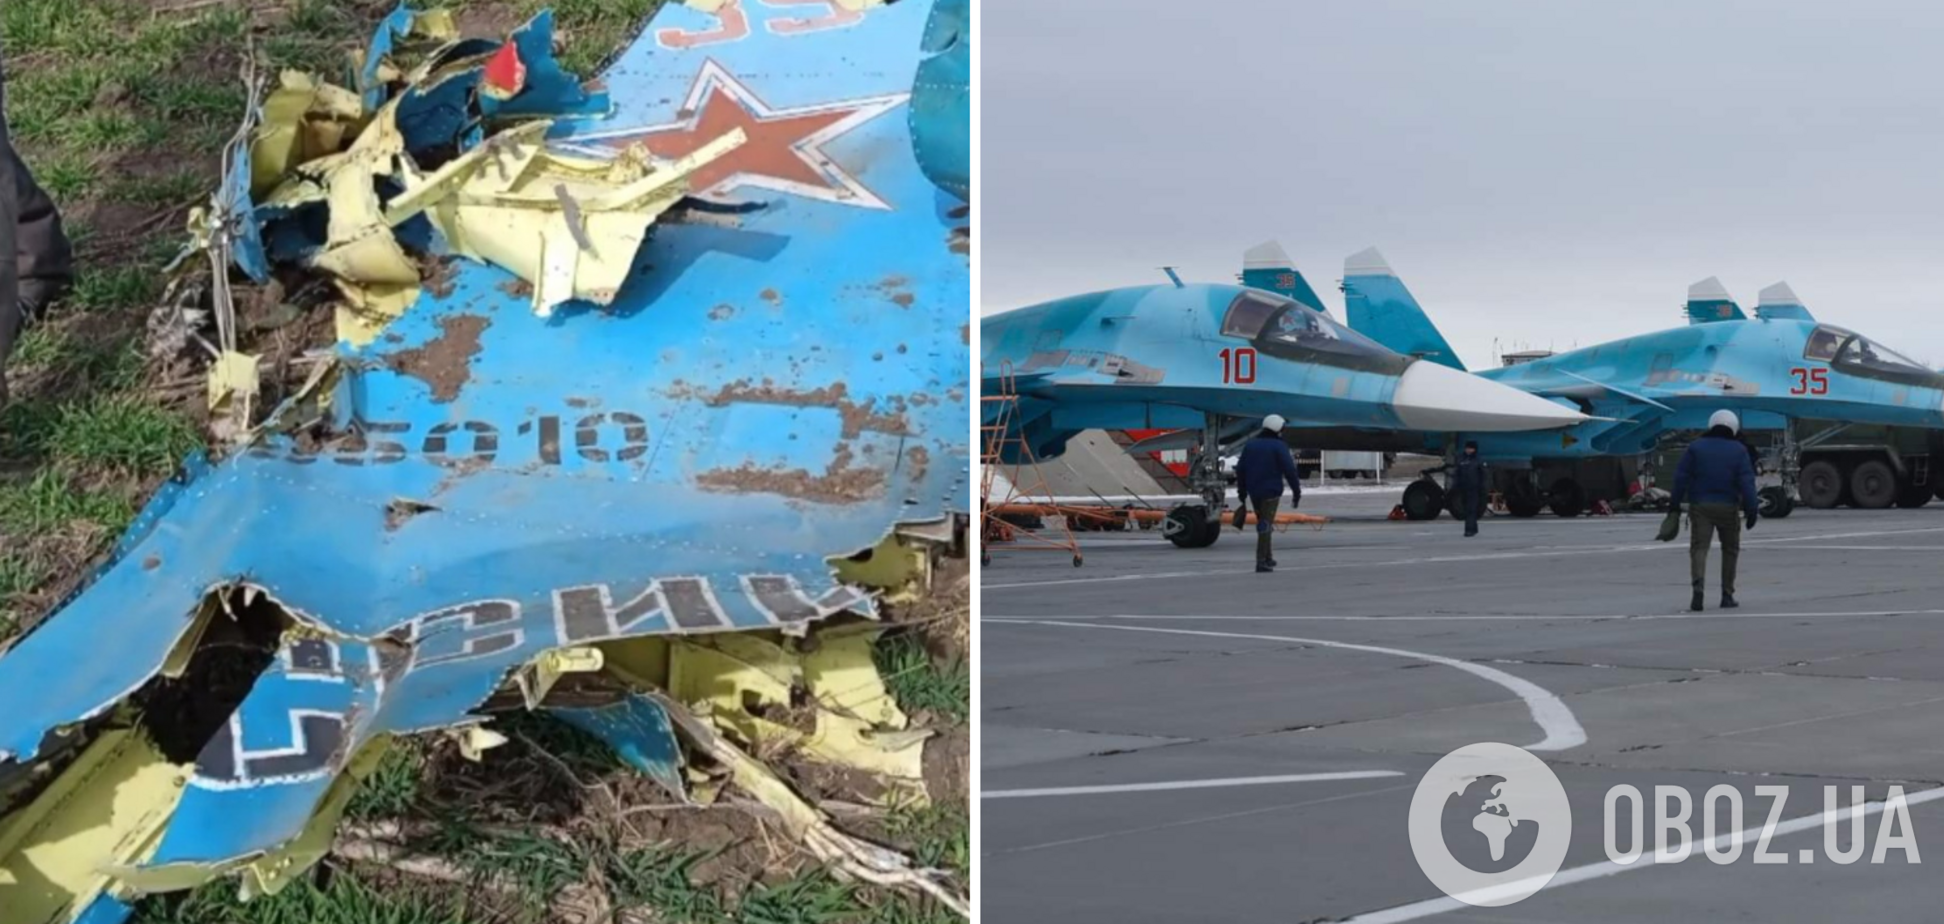 Все, что осталось от российского Су-34, собрали на прицеп: появилось знаковое фото 'гордости авиации РФ'